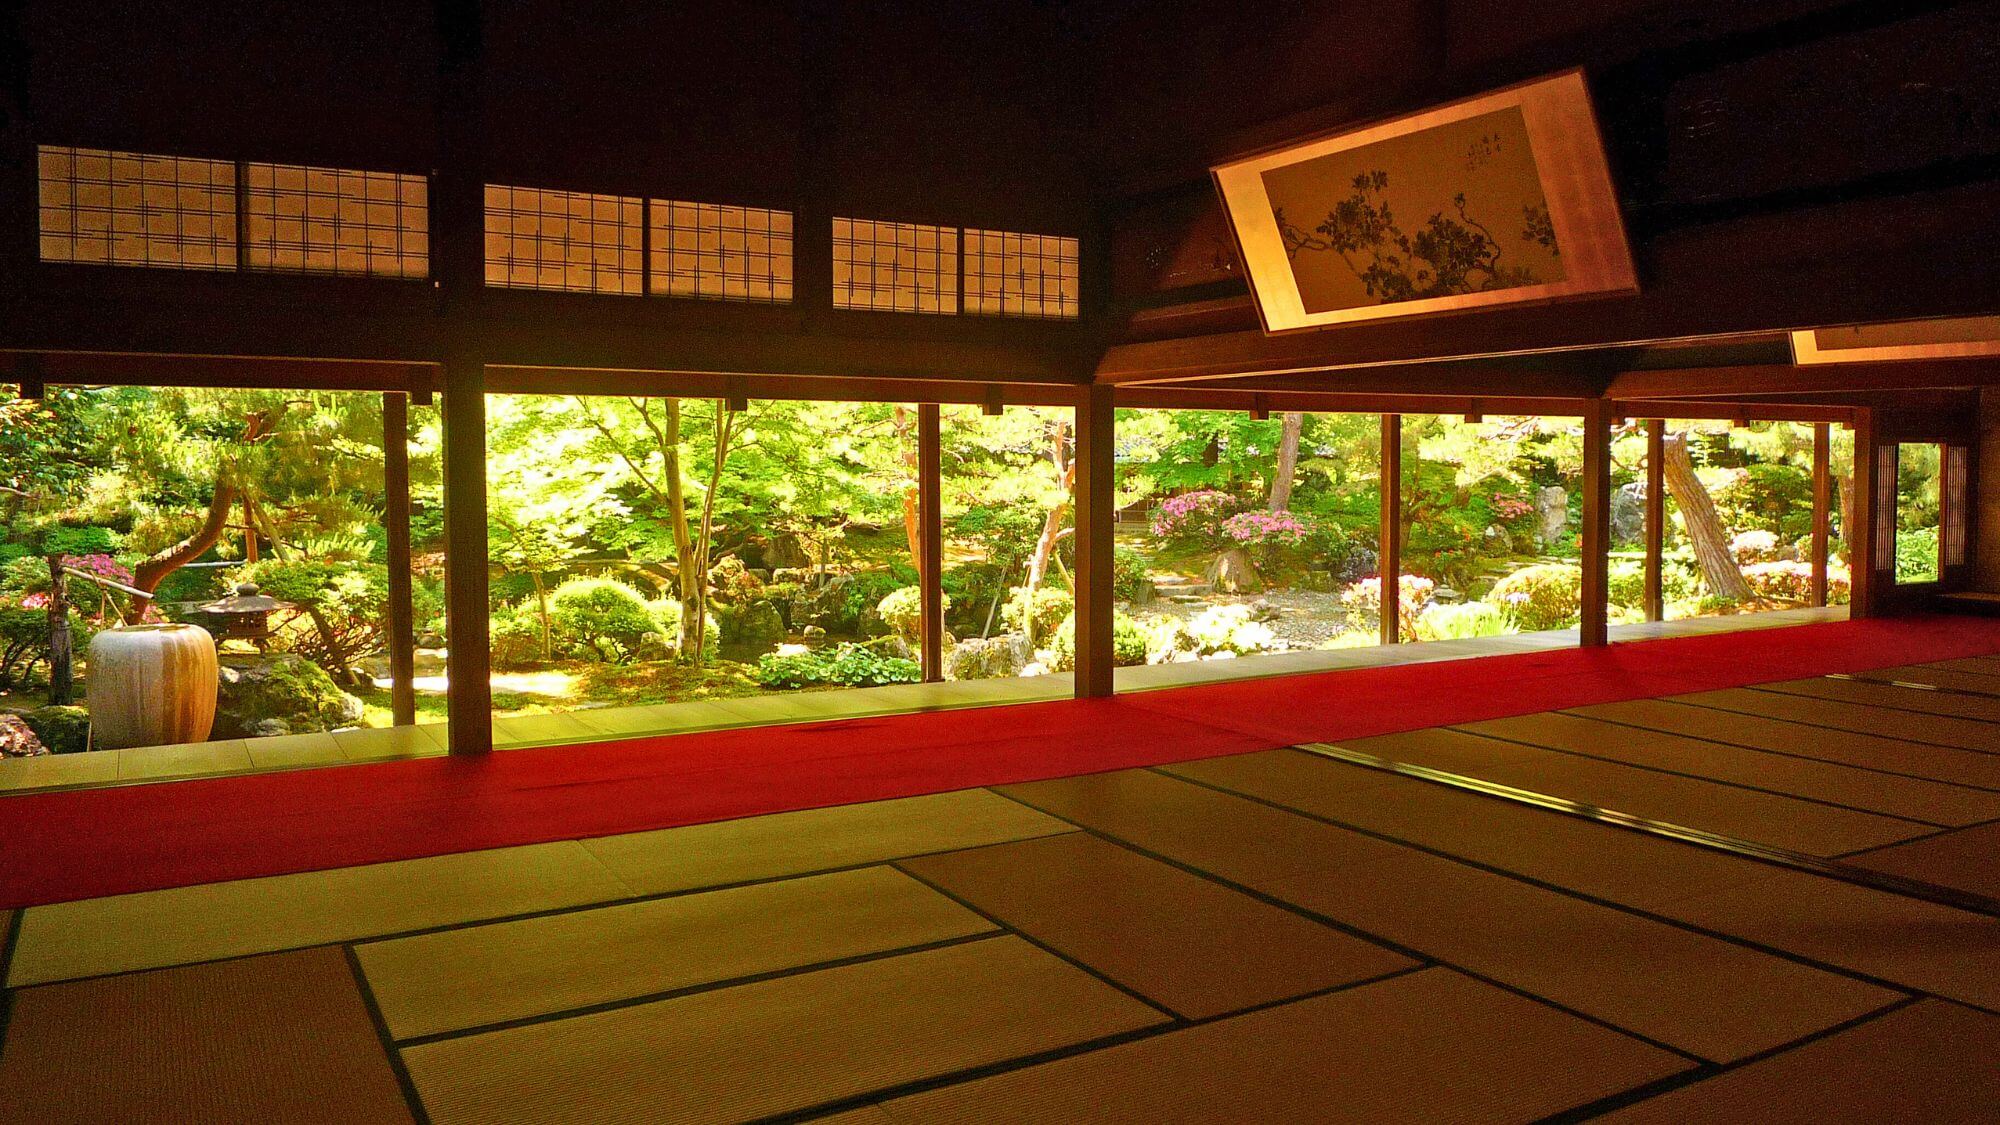 【北方文化博物館】お車30分。美術工芸品や考古資料の展示、広大な日本庭園や建築美に圧倒されます。